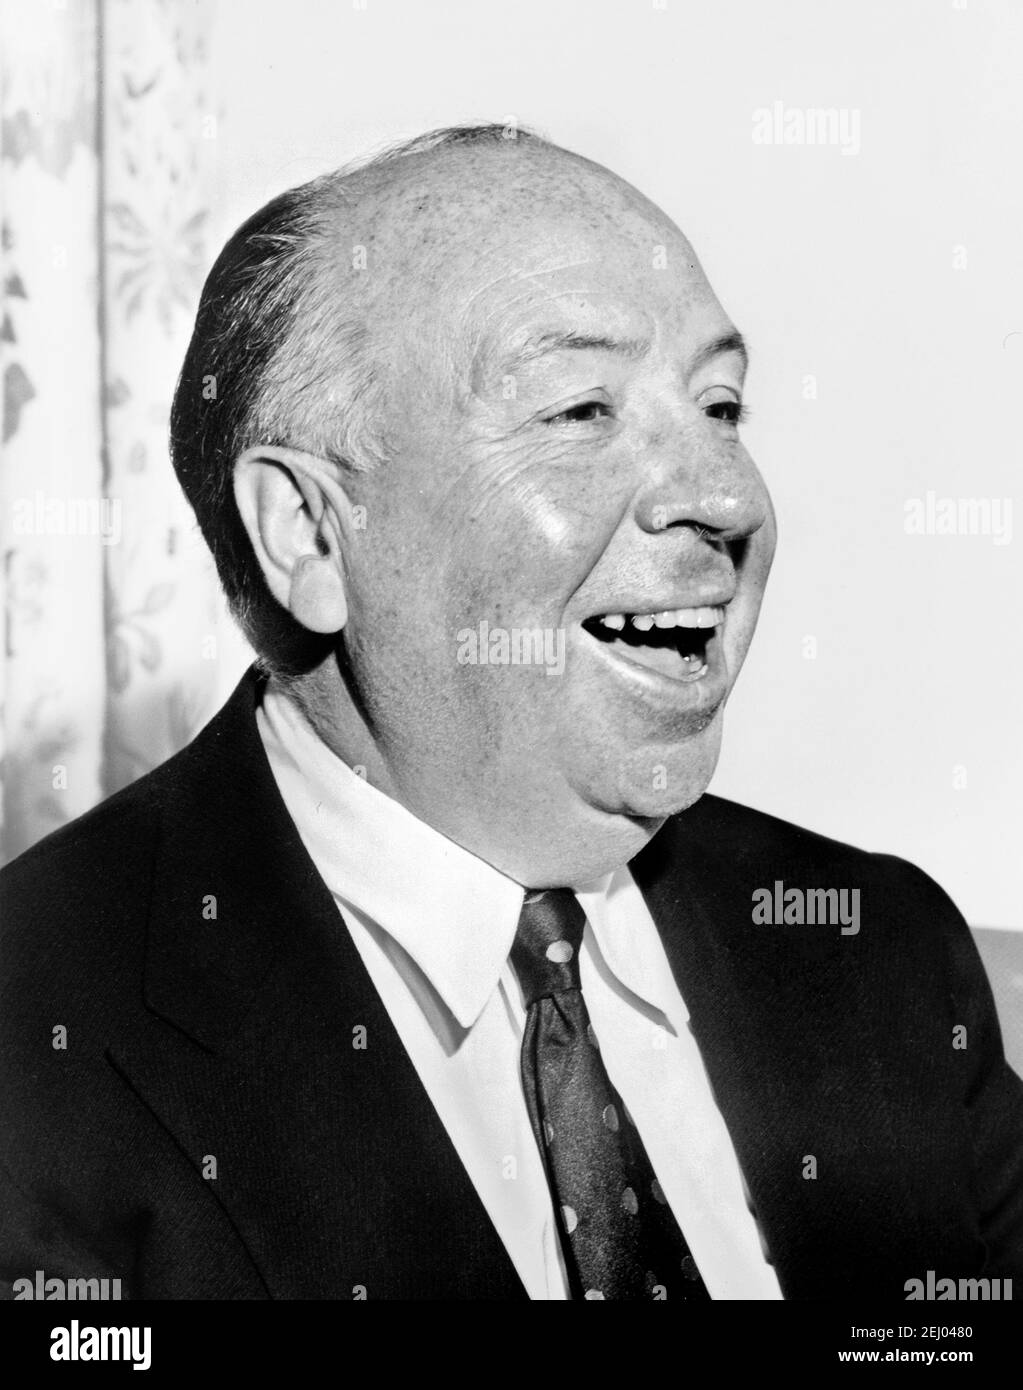 Alfred Hitchcock. Porträt des englischen Regisseurs Sir Alfred Joseph Hitchcock (1899-1980), 1956 Stockfoto